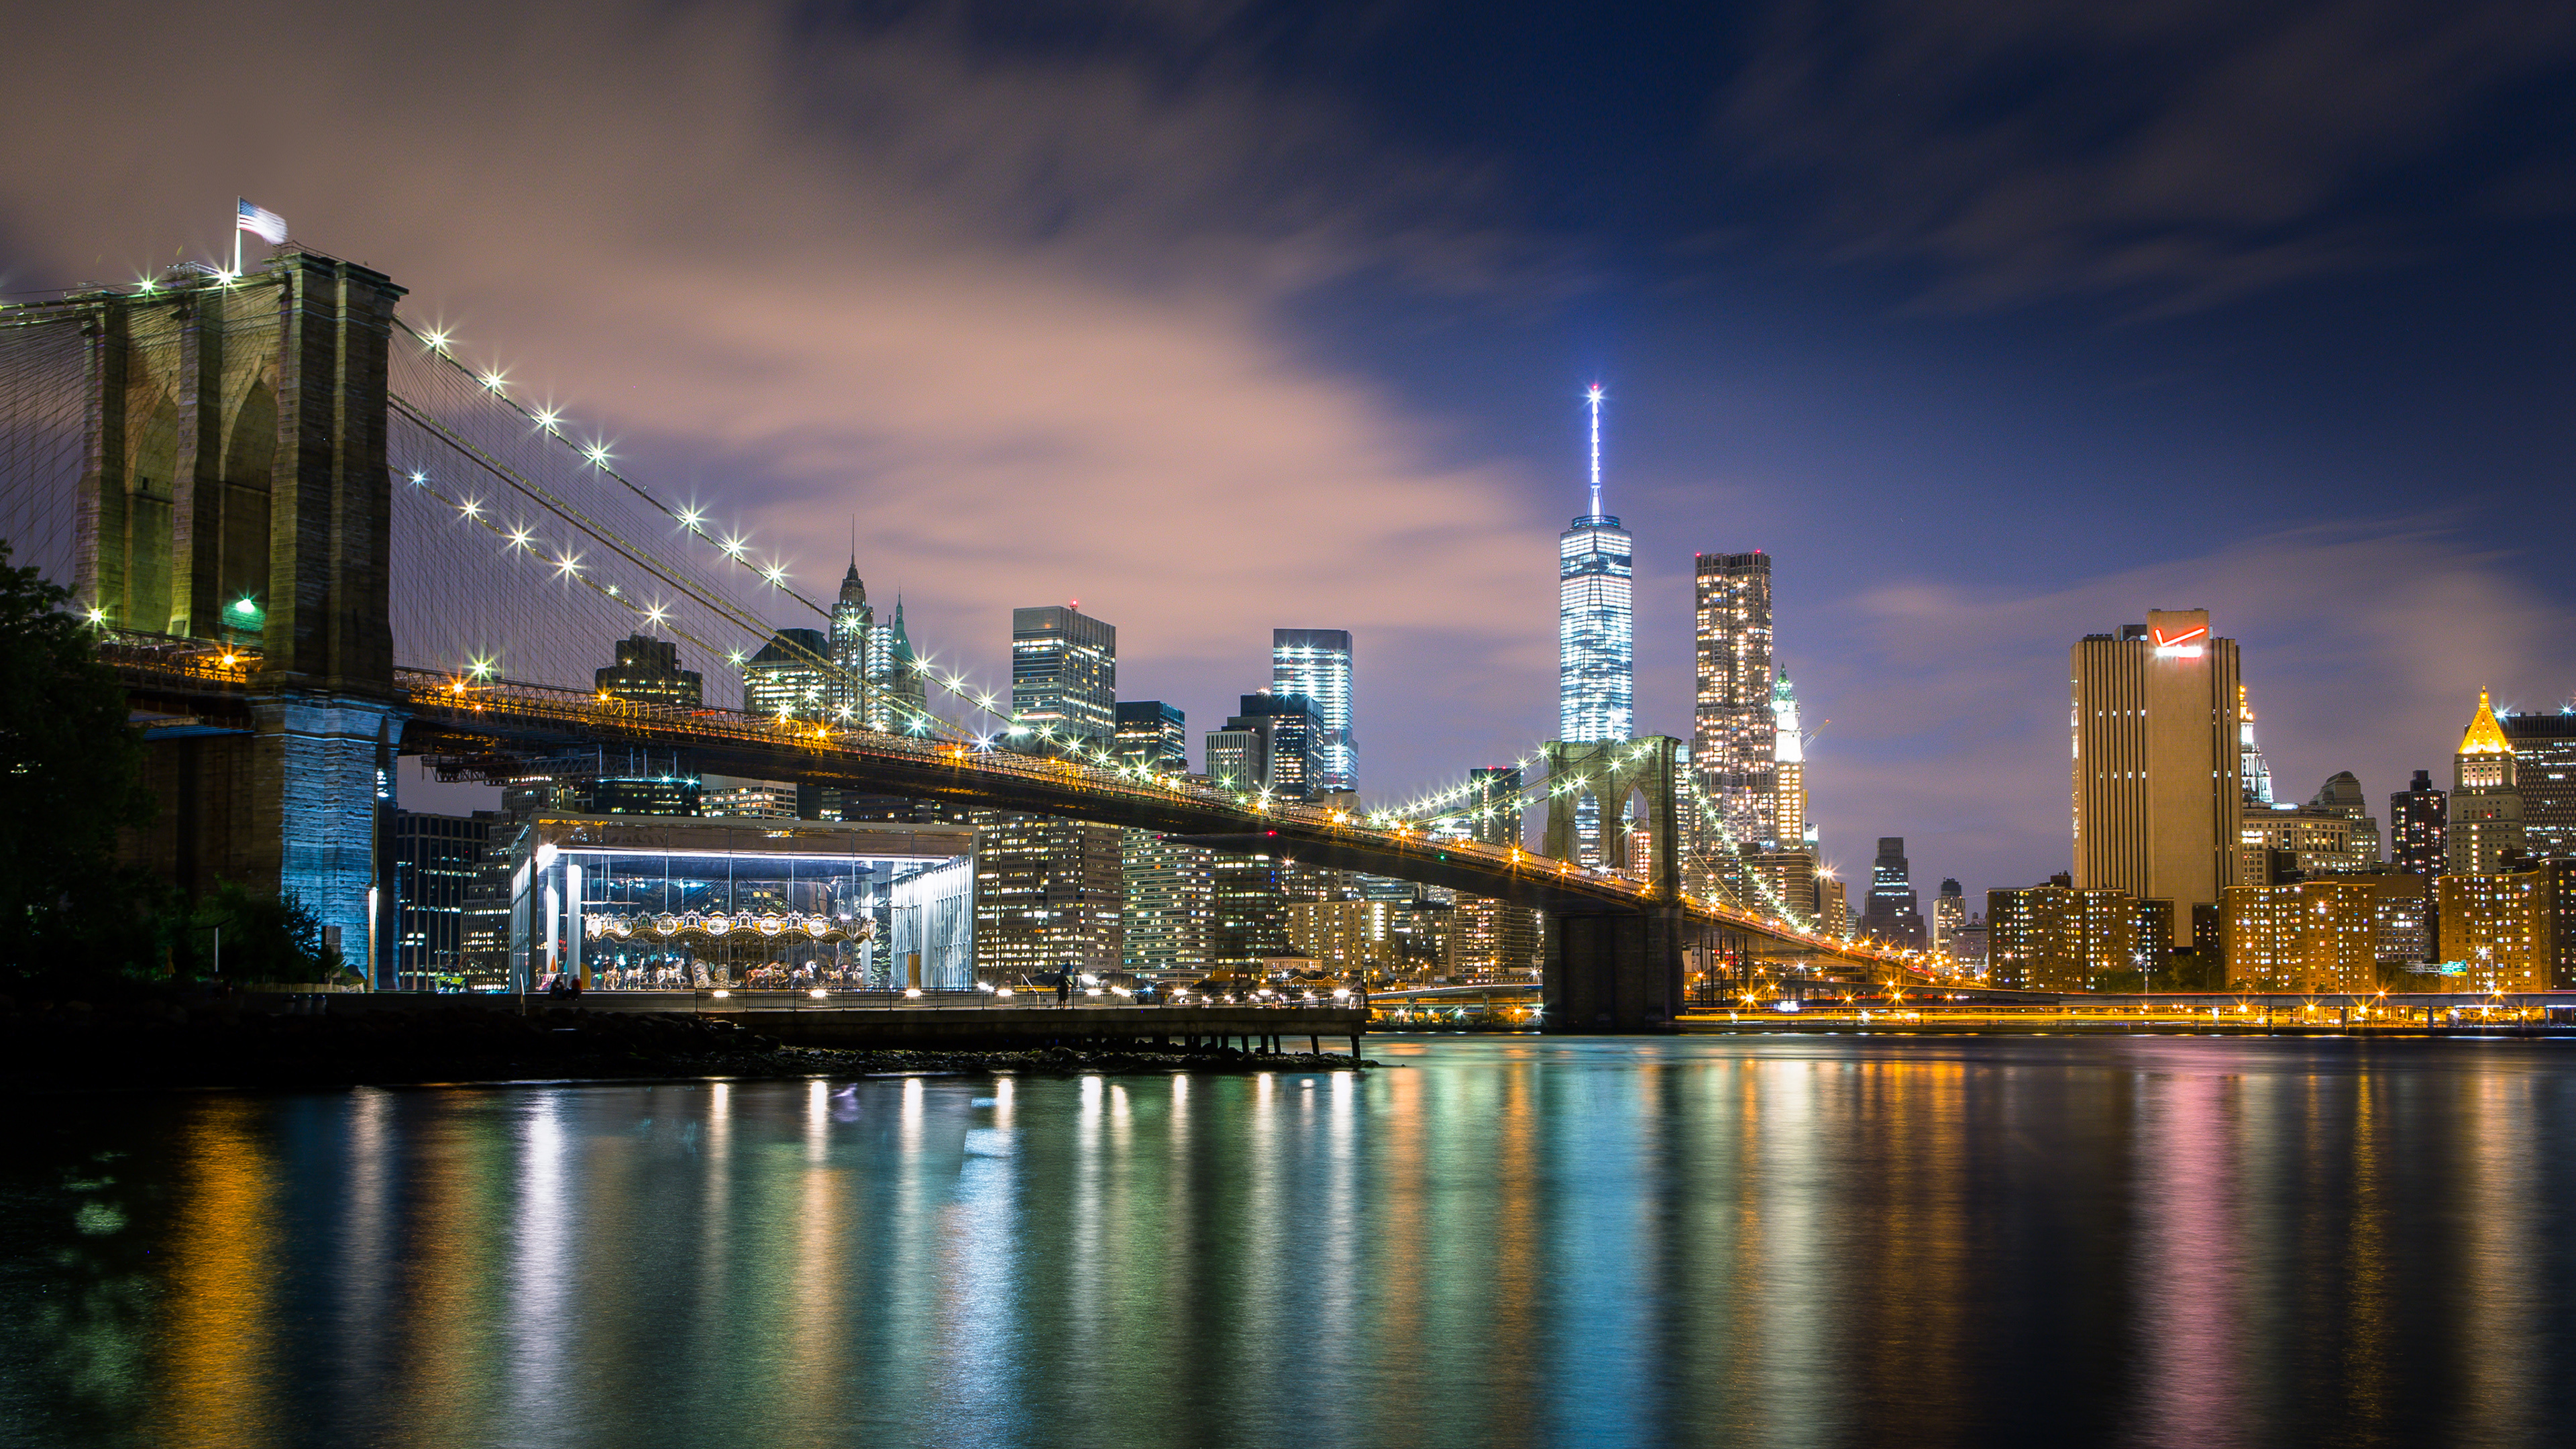 Brooklyn Bridge, 4k ultra HD, Wallpaper background, Image, 3840x2160 4K Desktop